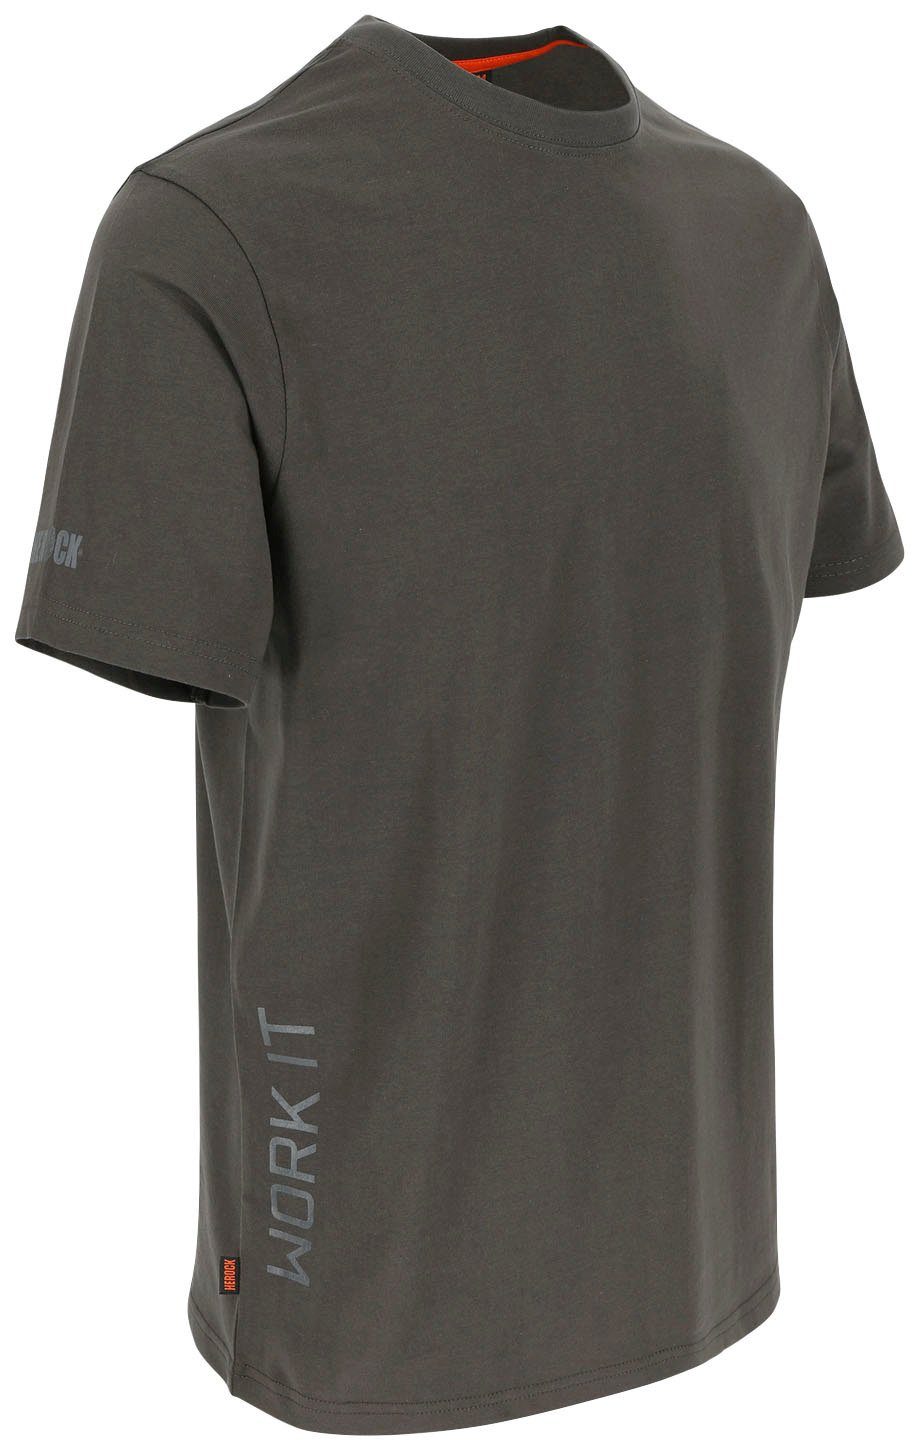 Callius kurze Ärmel Herock kurze T-Shirt Rundhalsausschnitt, Ärmel, T-Shirt Rippstrickkragen grau Herock®-Aufdruck,